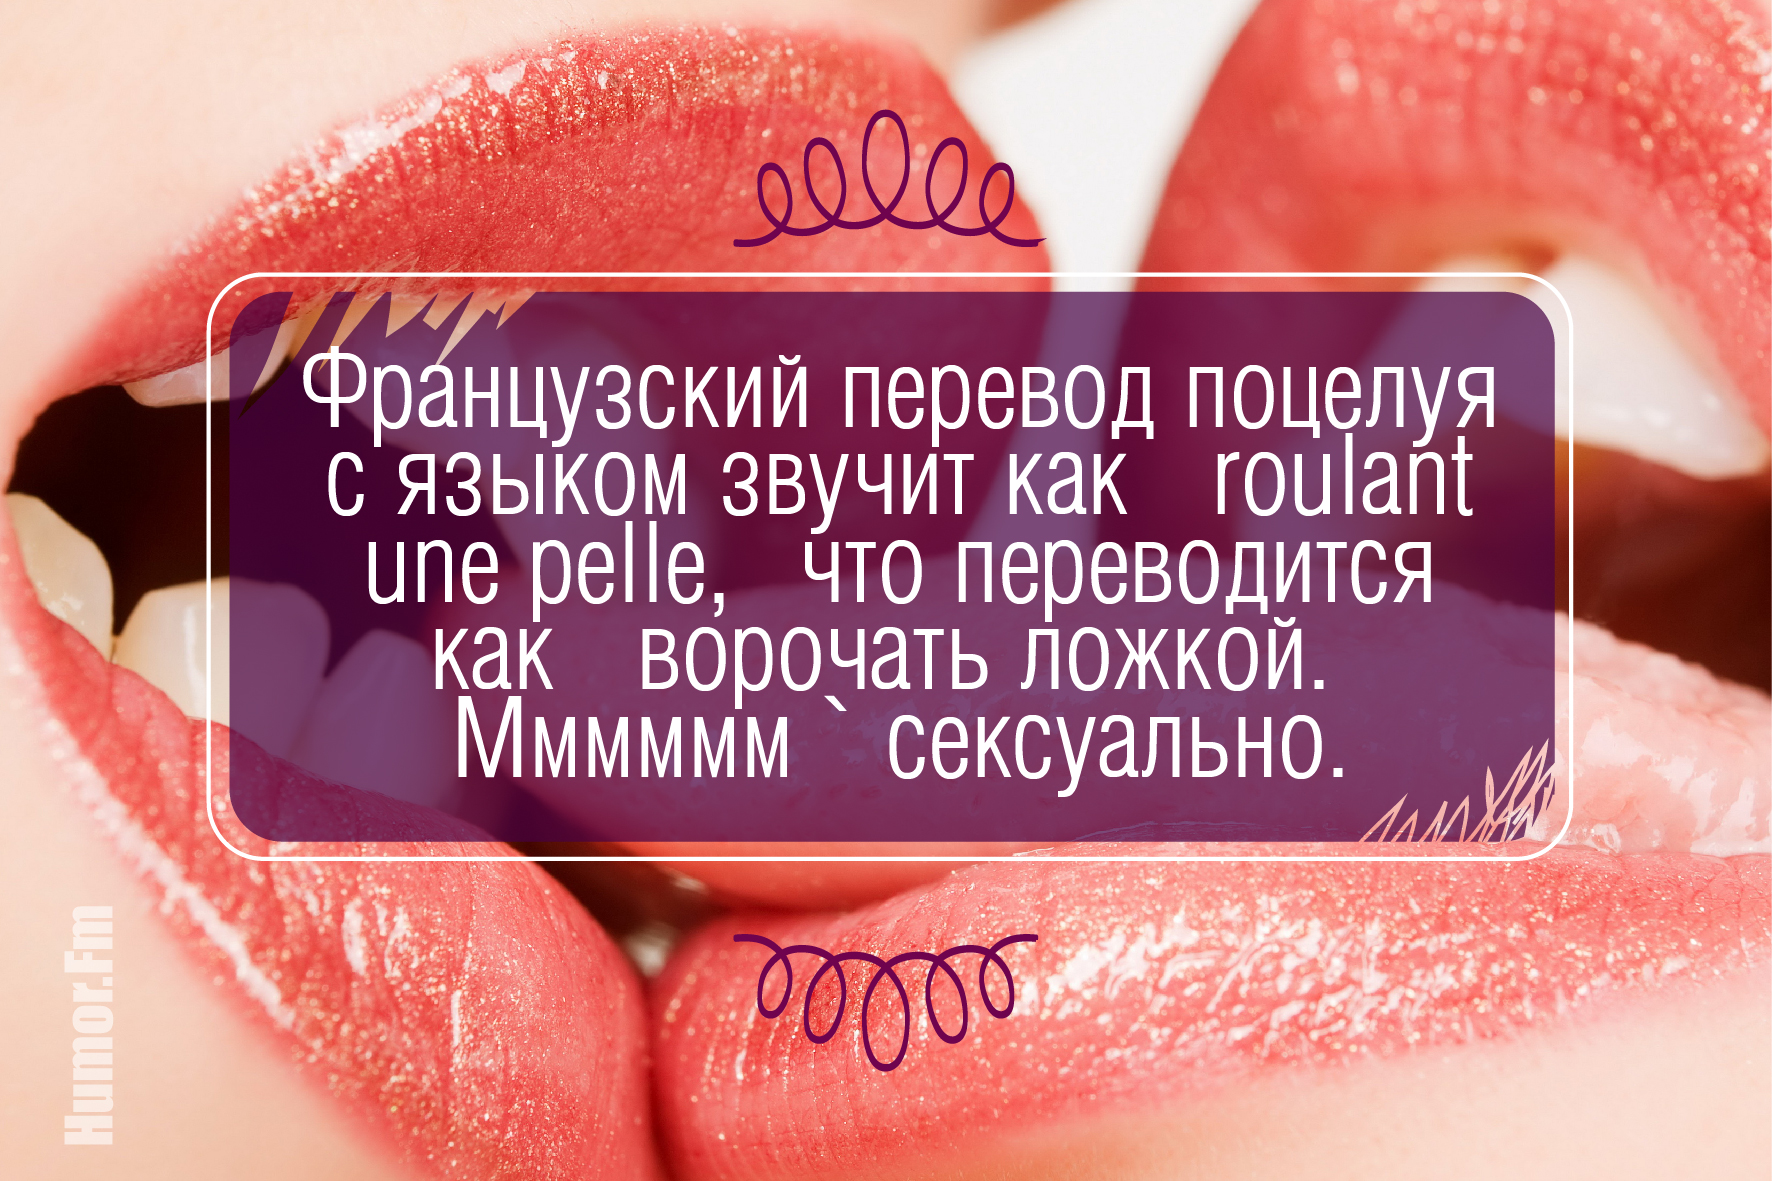 Красивые фразы про губы. Факты о поцелуях в губы. Поцелуй на здоровье.